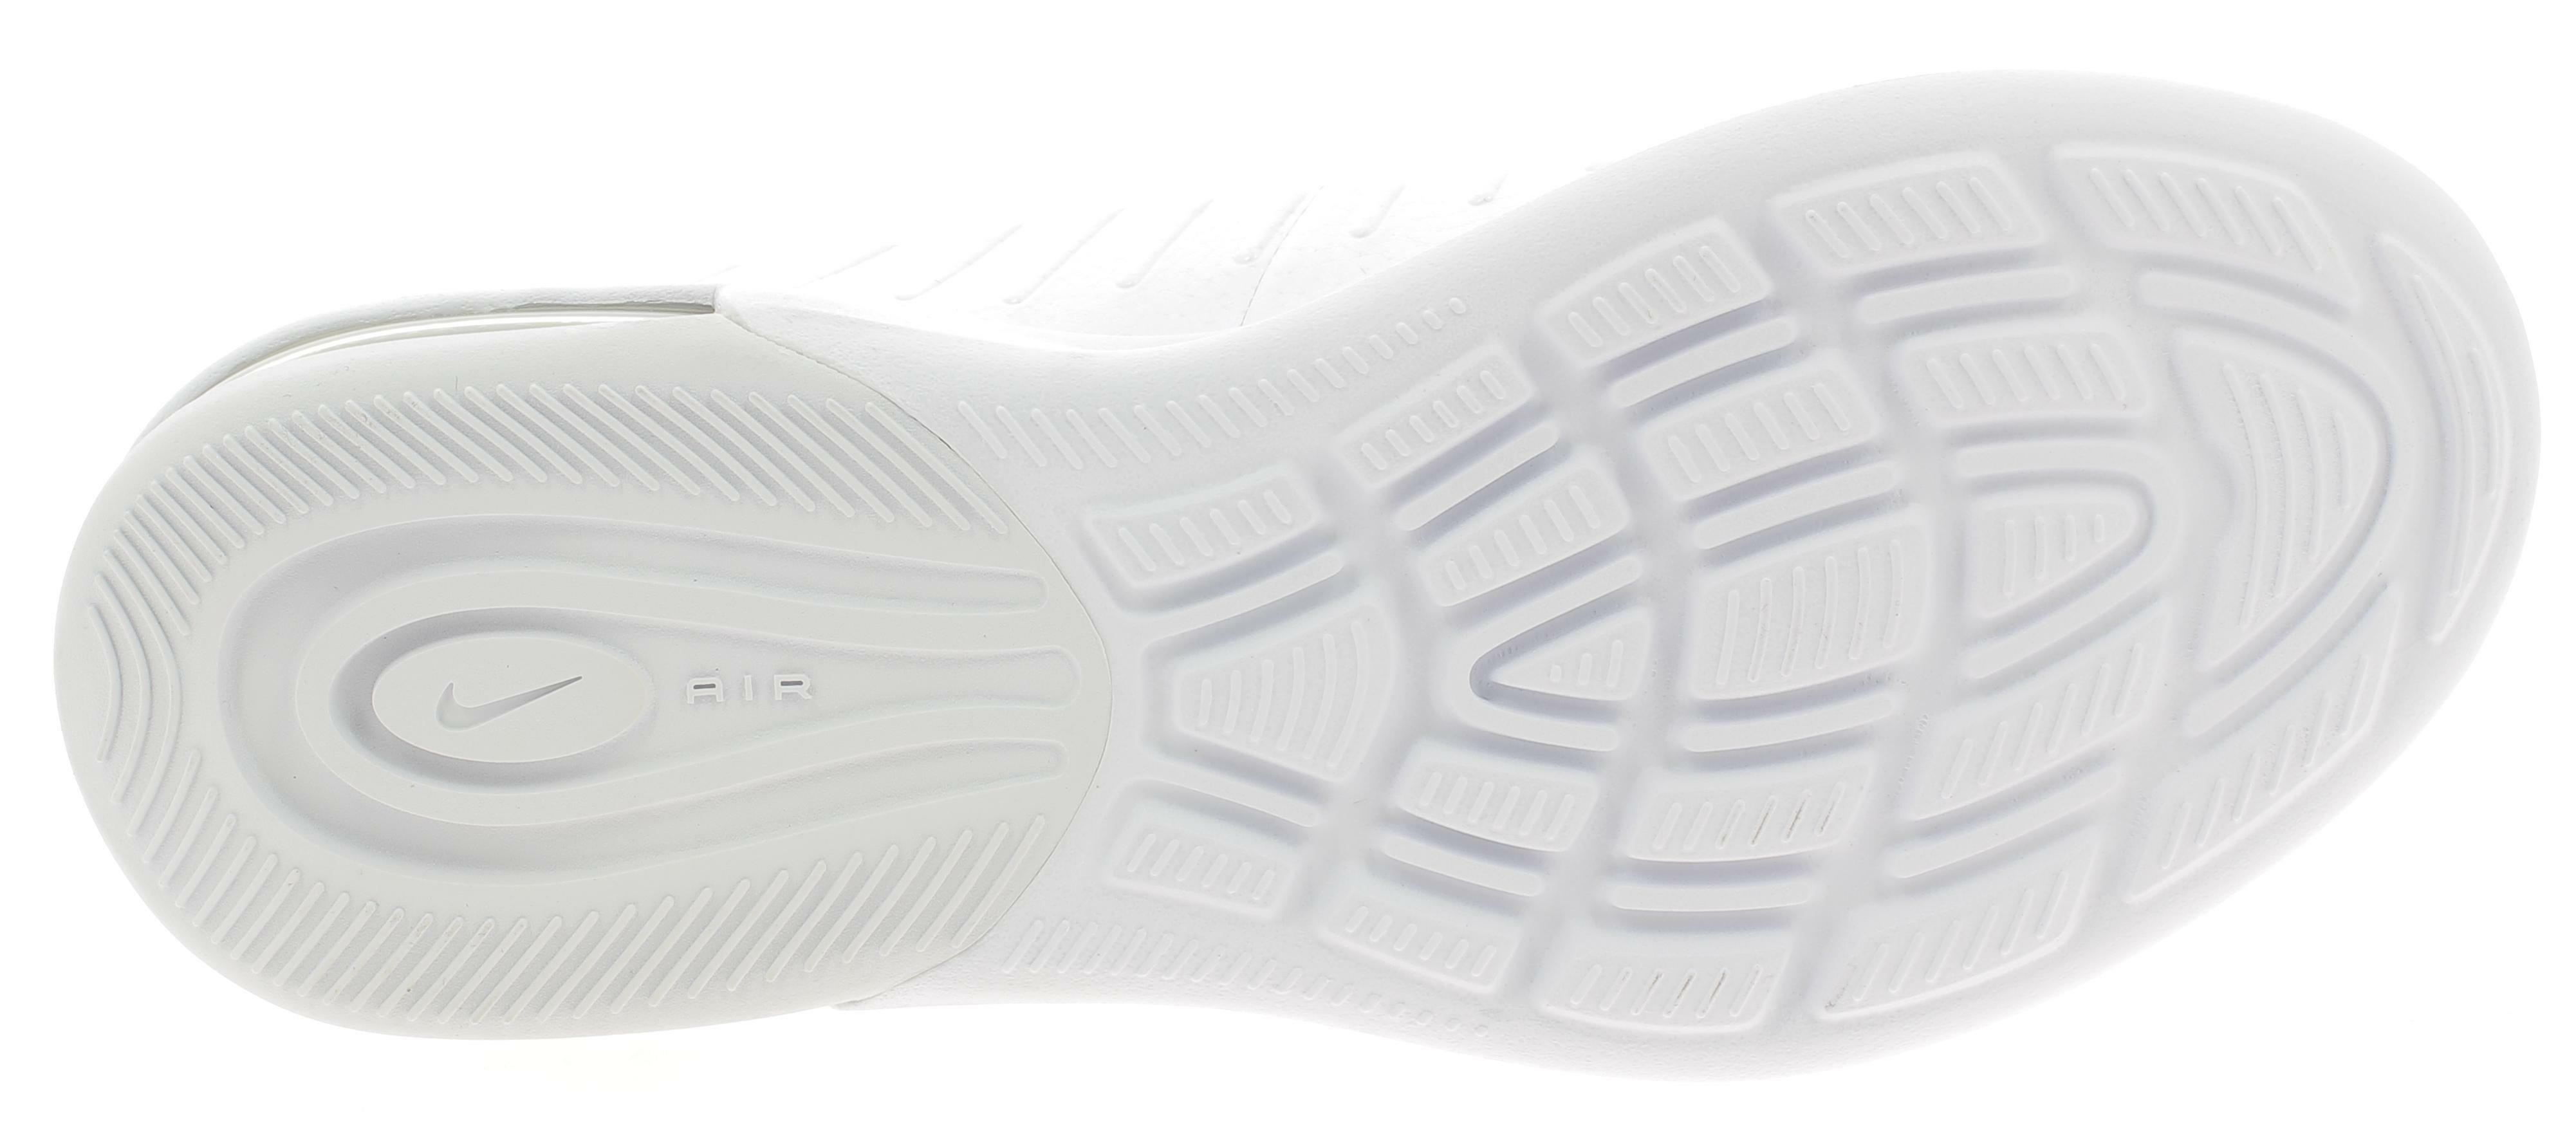 nike nike air max axis (gs) scarpe sportive donna bianche ah5226100